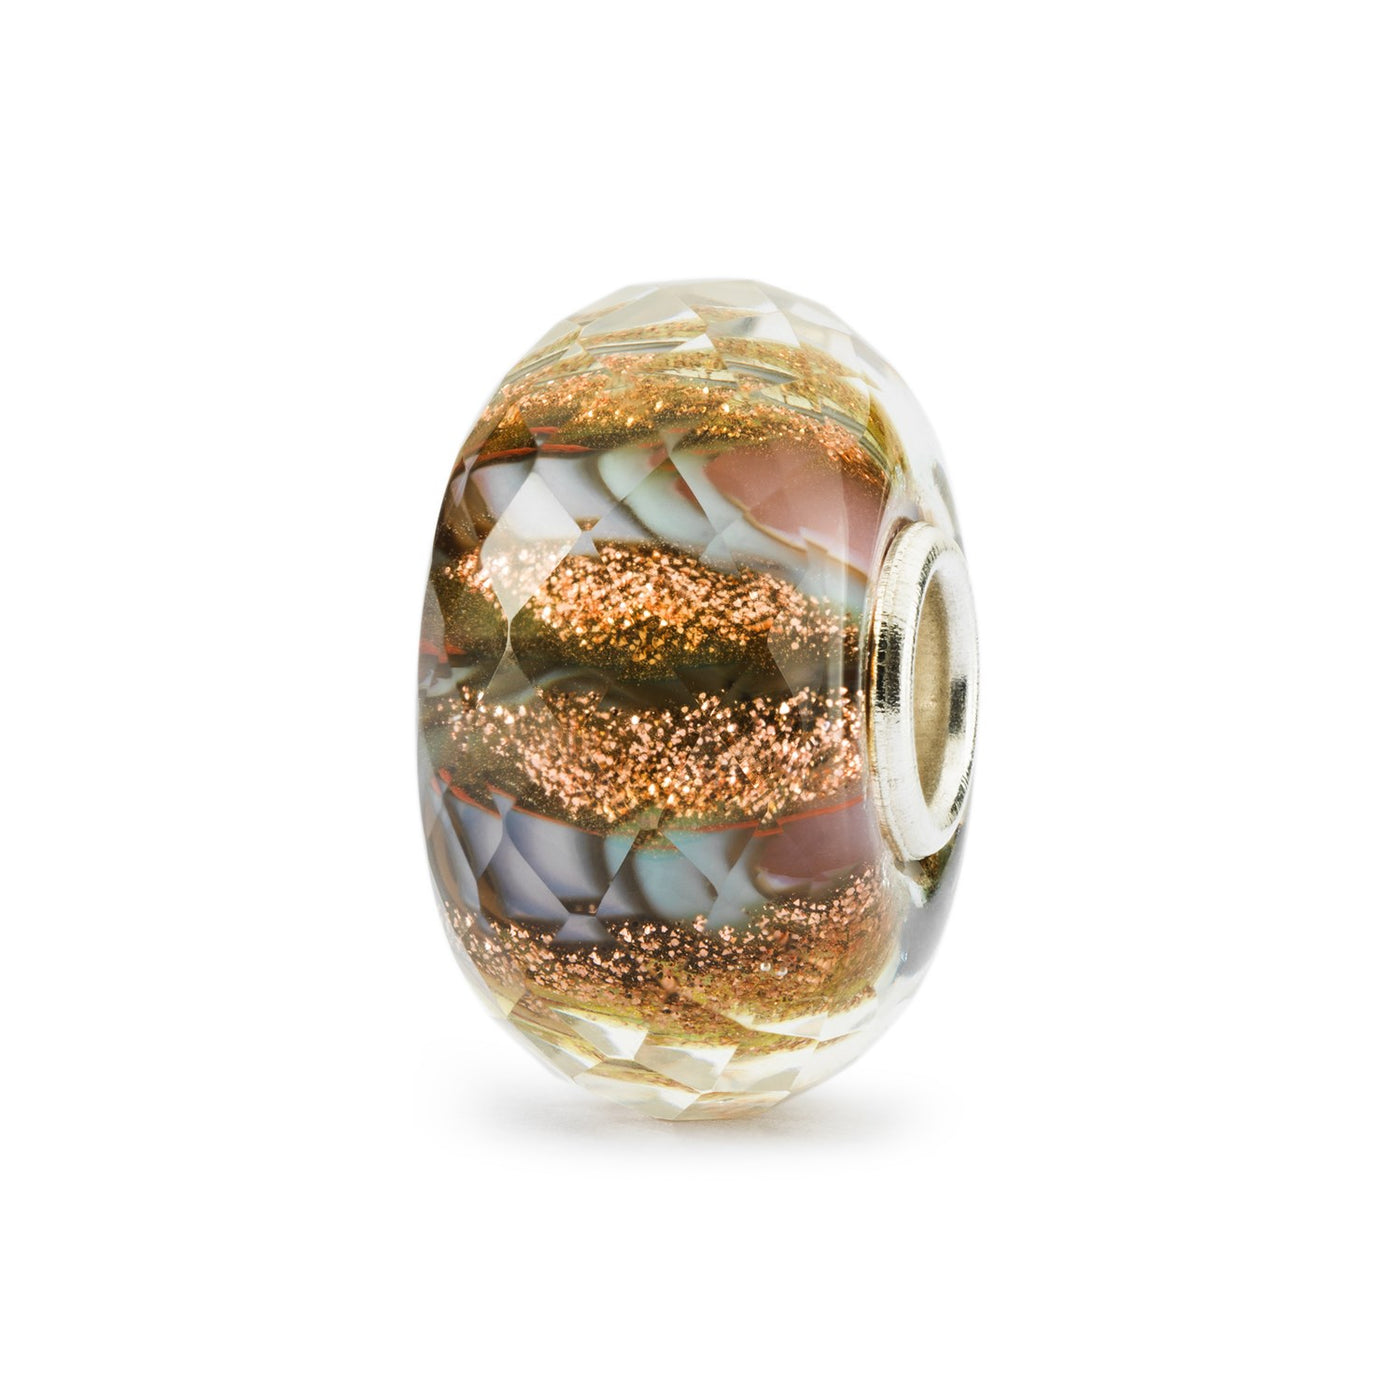 Sol & Jord kugle er lavet af glas med en sølvkerne og indeholder en facetteret overflade i orange og brune farver med spor af glimmer.